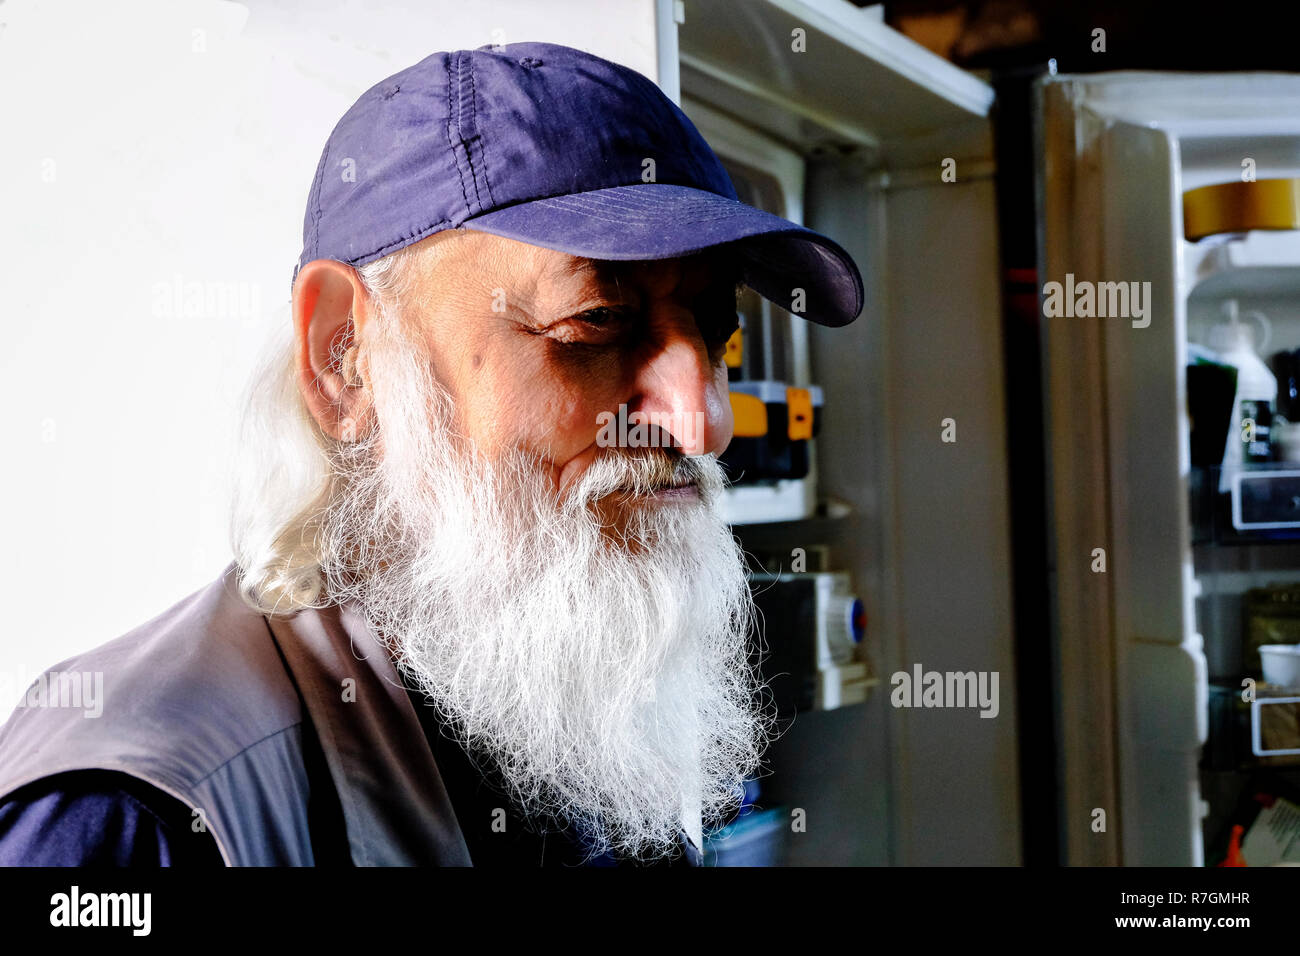 Portrait of bearded man wearing a cap Stock Photo